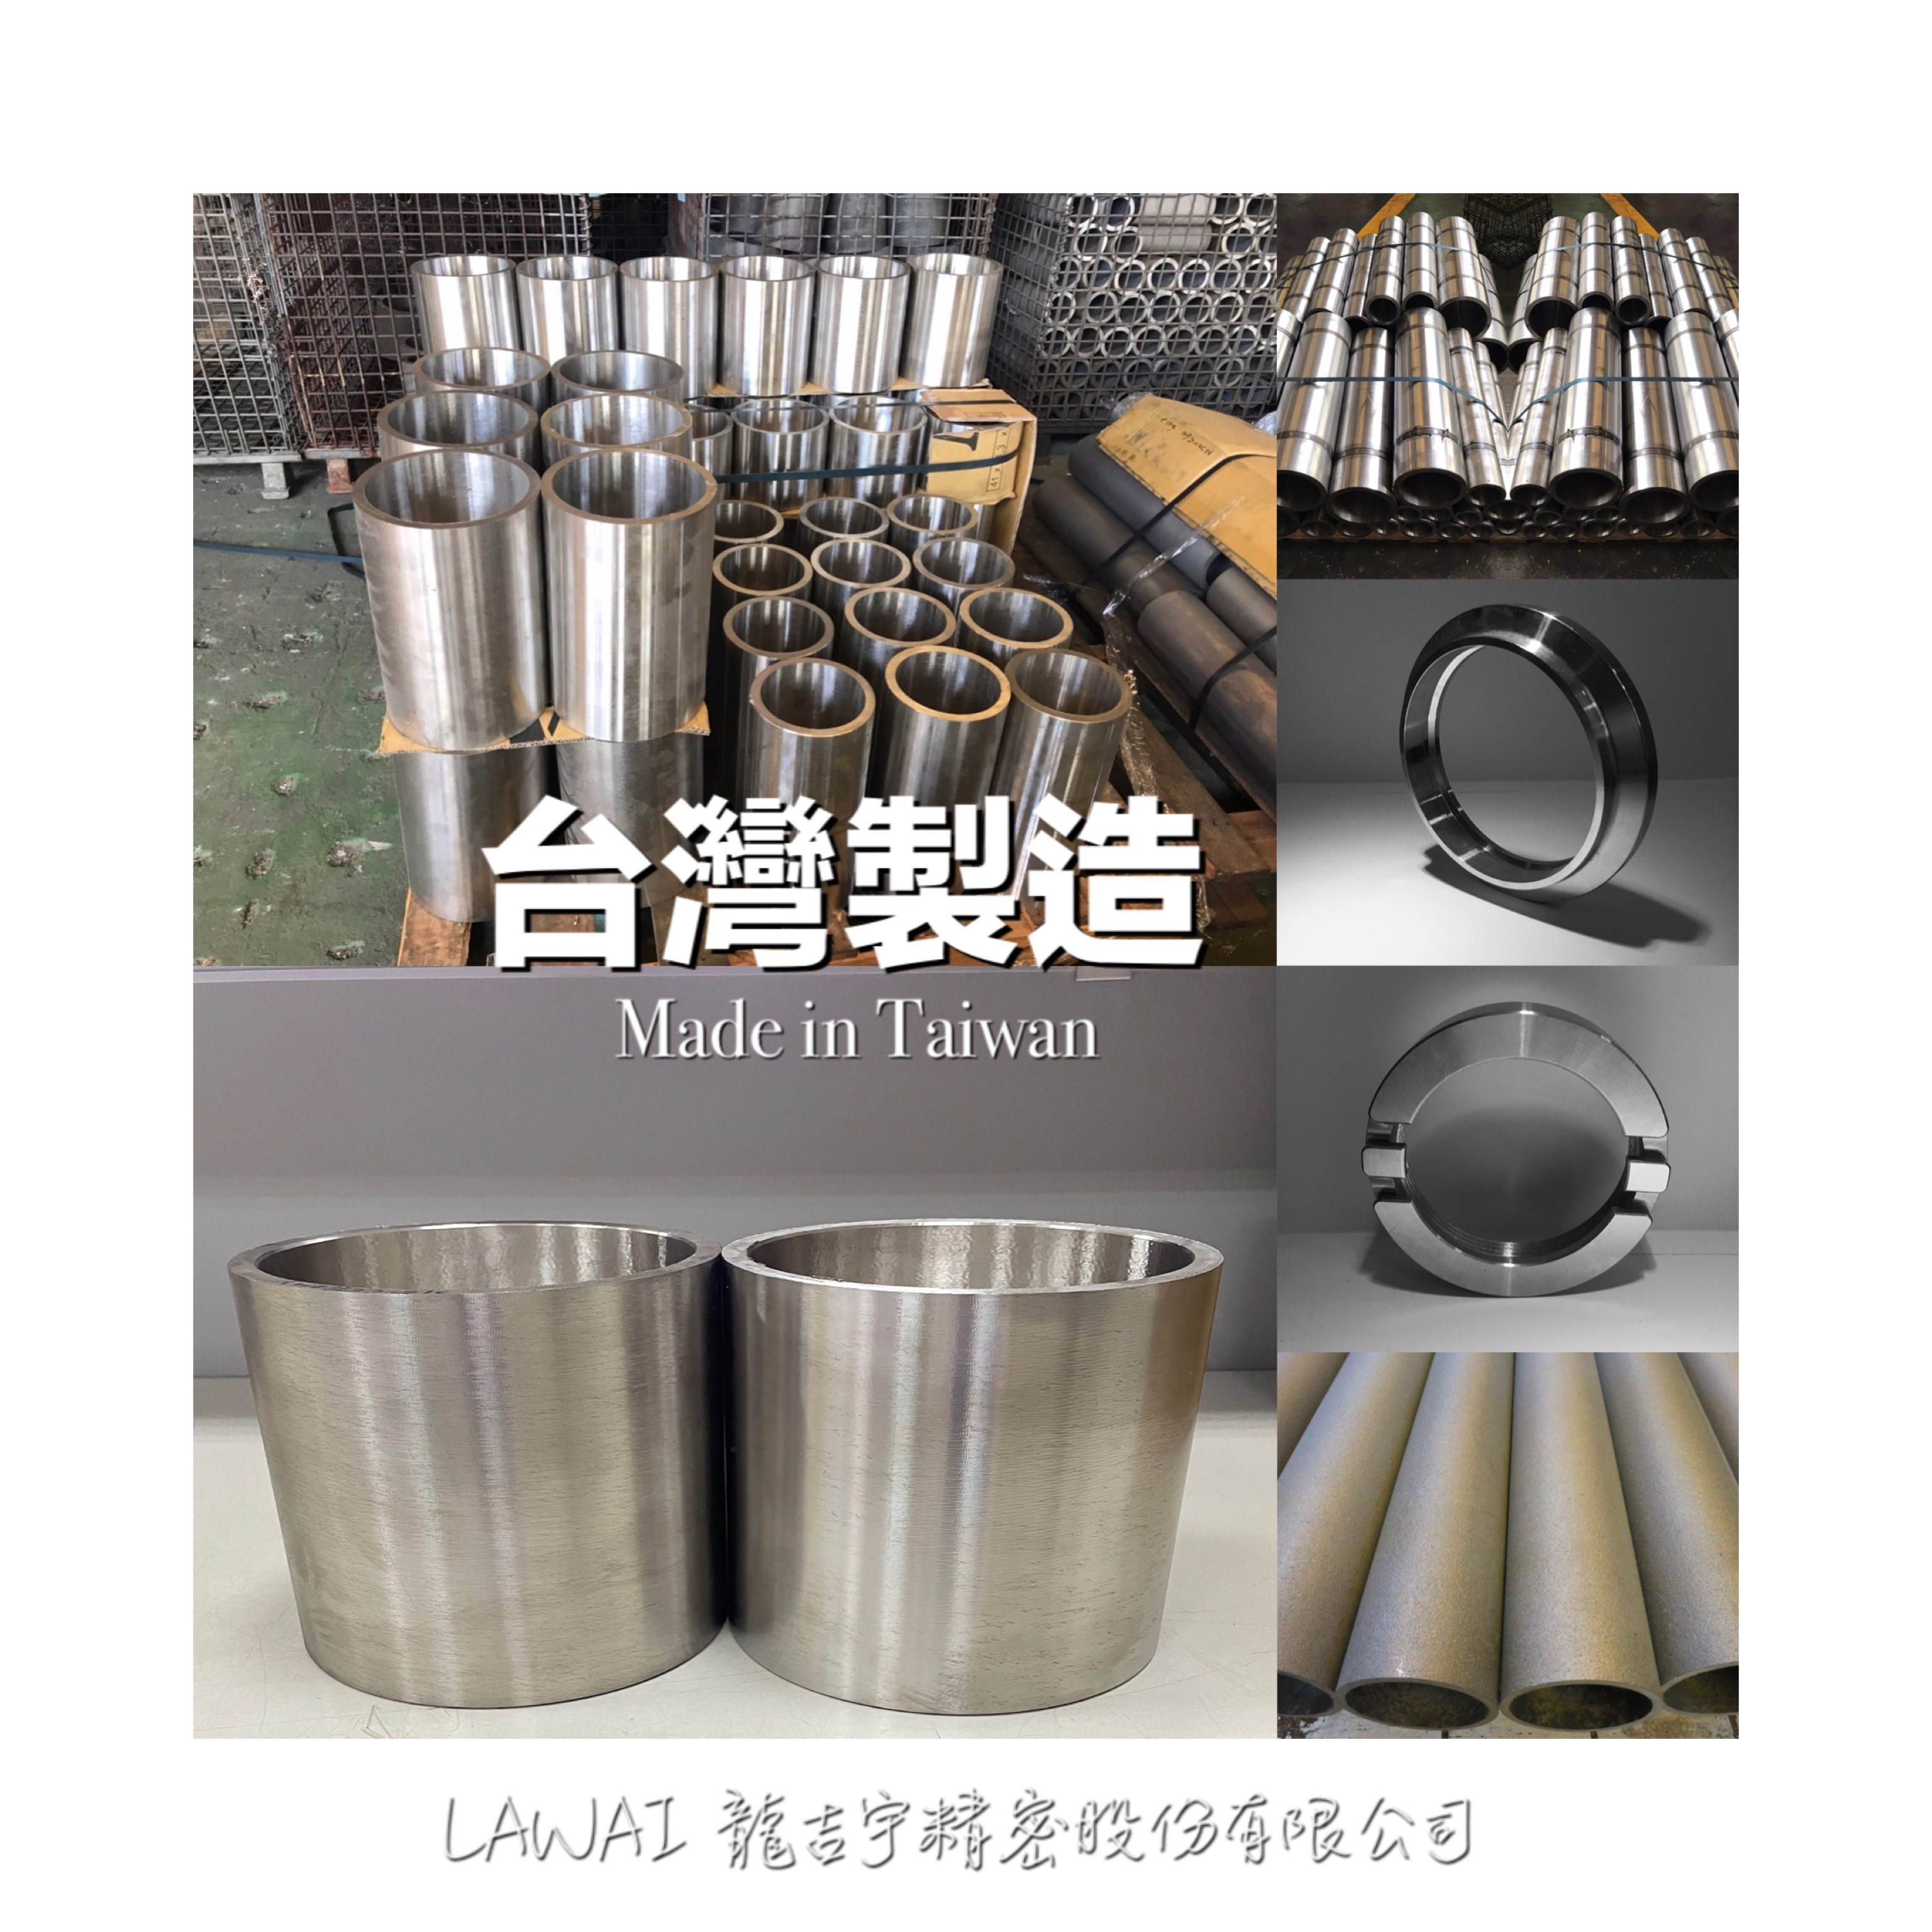 龍吉宇精密股份有限公司為304無縫不銹鋼圓管以及圓板製造商